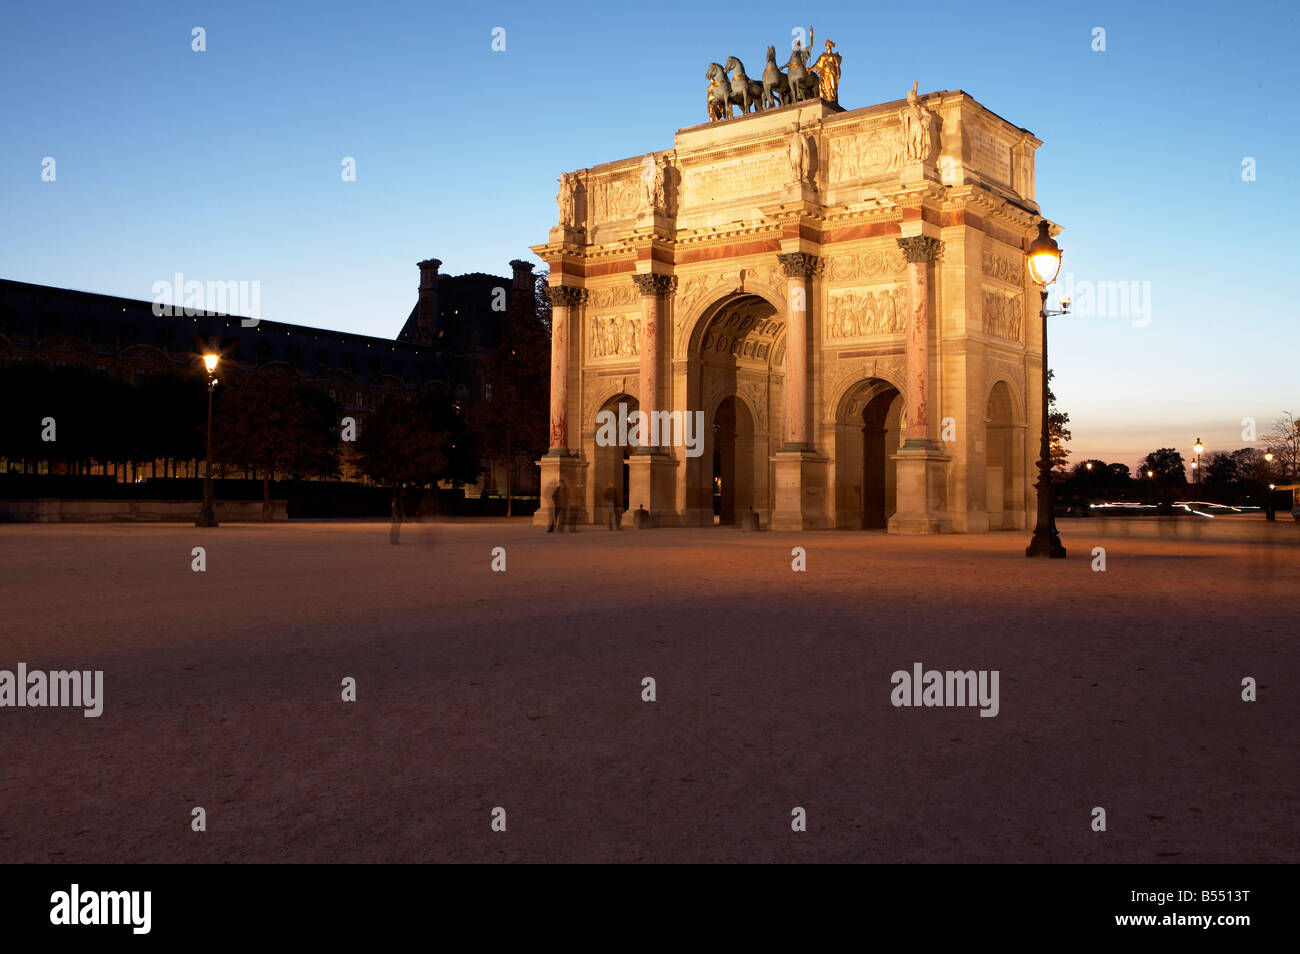 L'Arc de triomphe du Carrousel dans le jardin du Carrousel au crépuscule, Paris France Banque D'Images